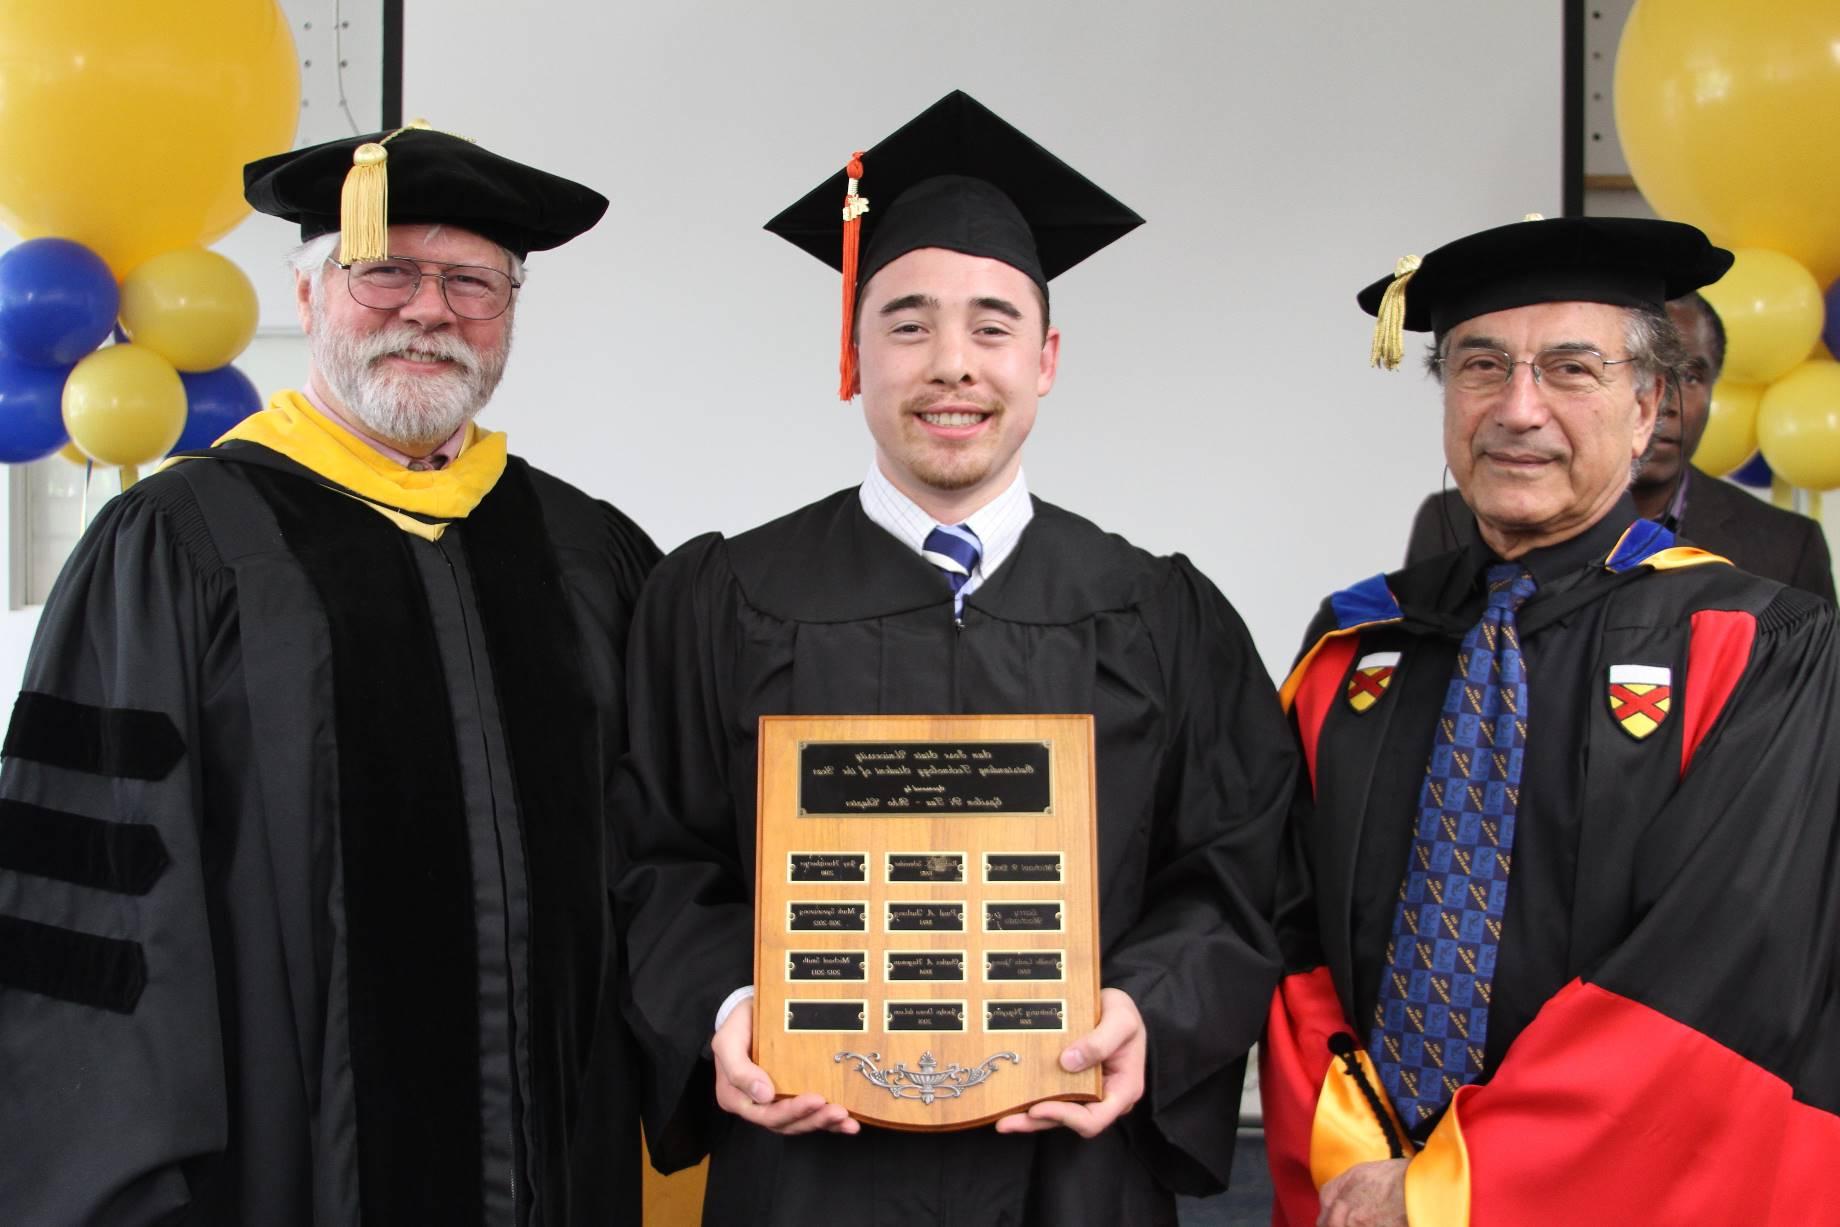 Michael获得2013年度杰出科技学生奖